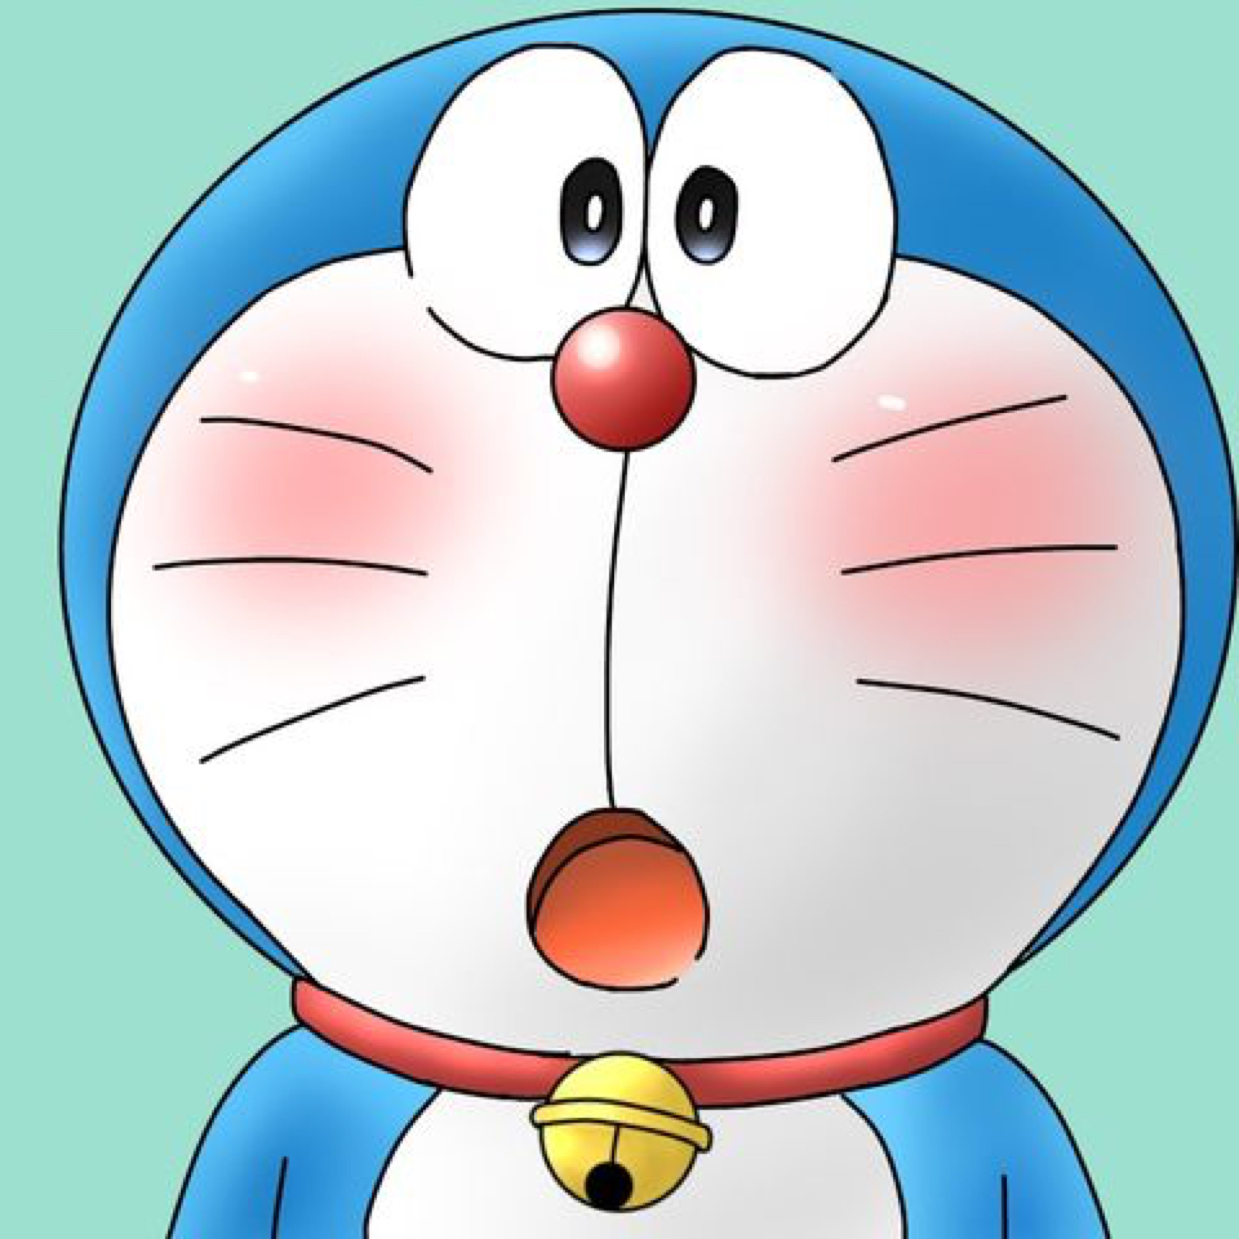 Hình ảnh avatar doremon đẹp - Bấm vào hình ảnh đại diện Doremon này để tìm hiểu cách làm nổi bật trang cá nhân của bạn. Hình ảnh Doremon này không chỉ đẹp mắt mà còn mang lại nhiều ý nghĩa đặc biệt. Hãy cùng chia sẻ với bạn bè và gia đình.